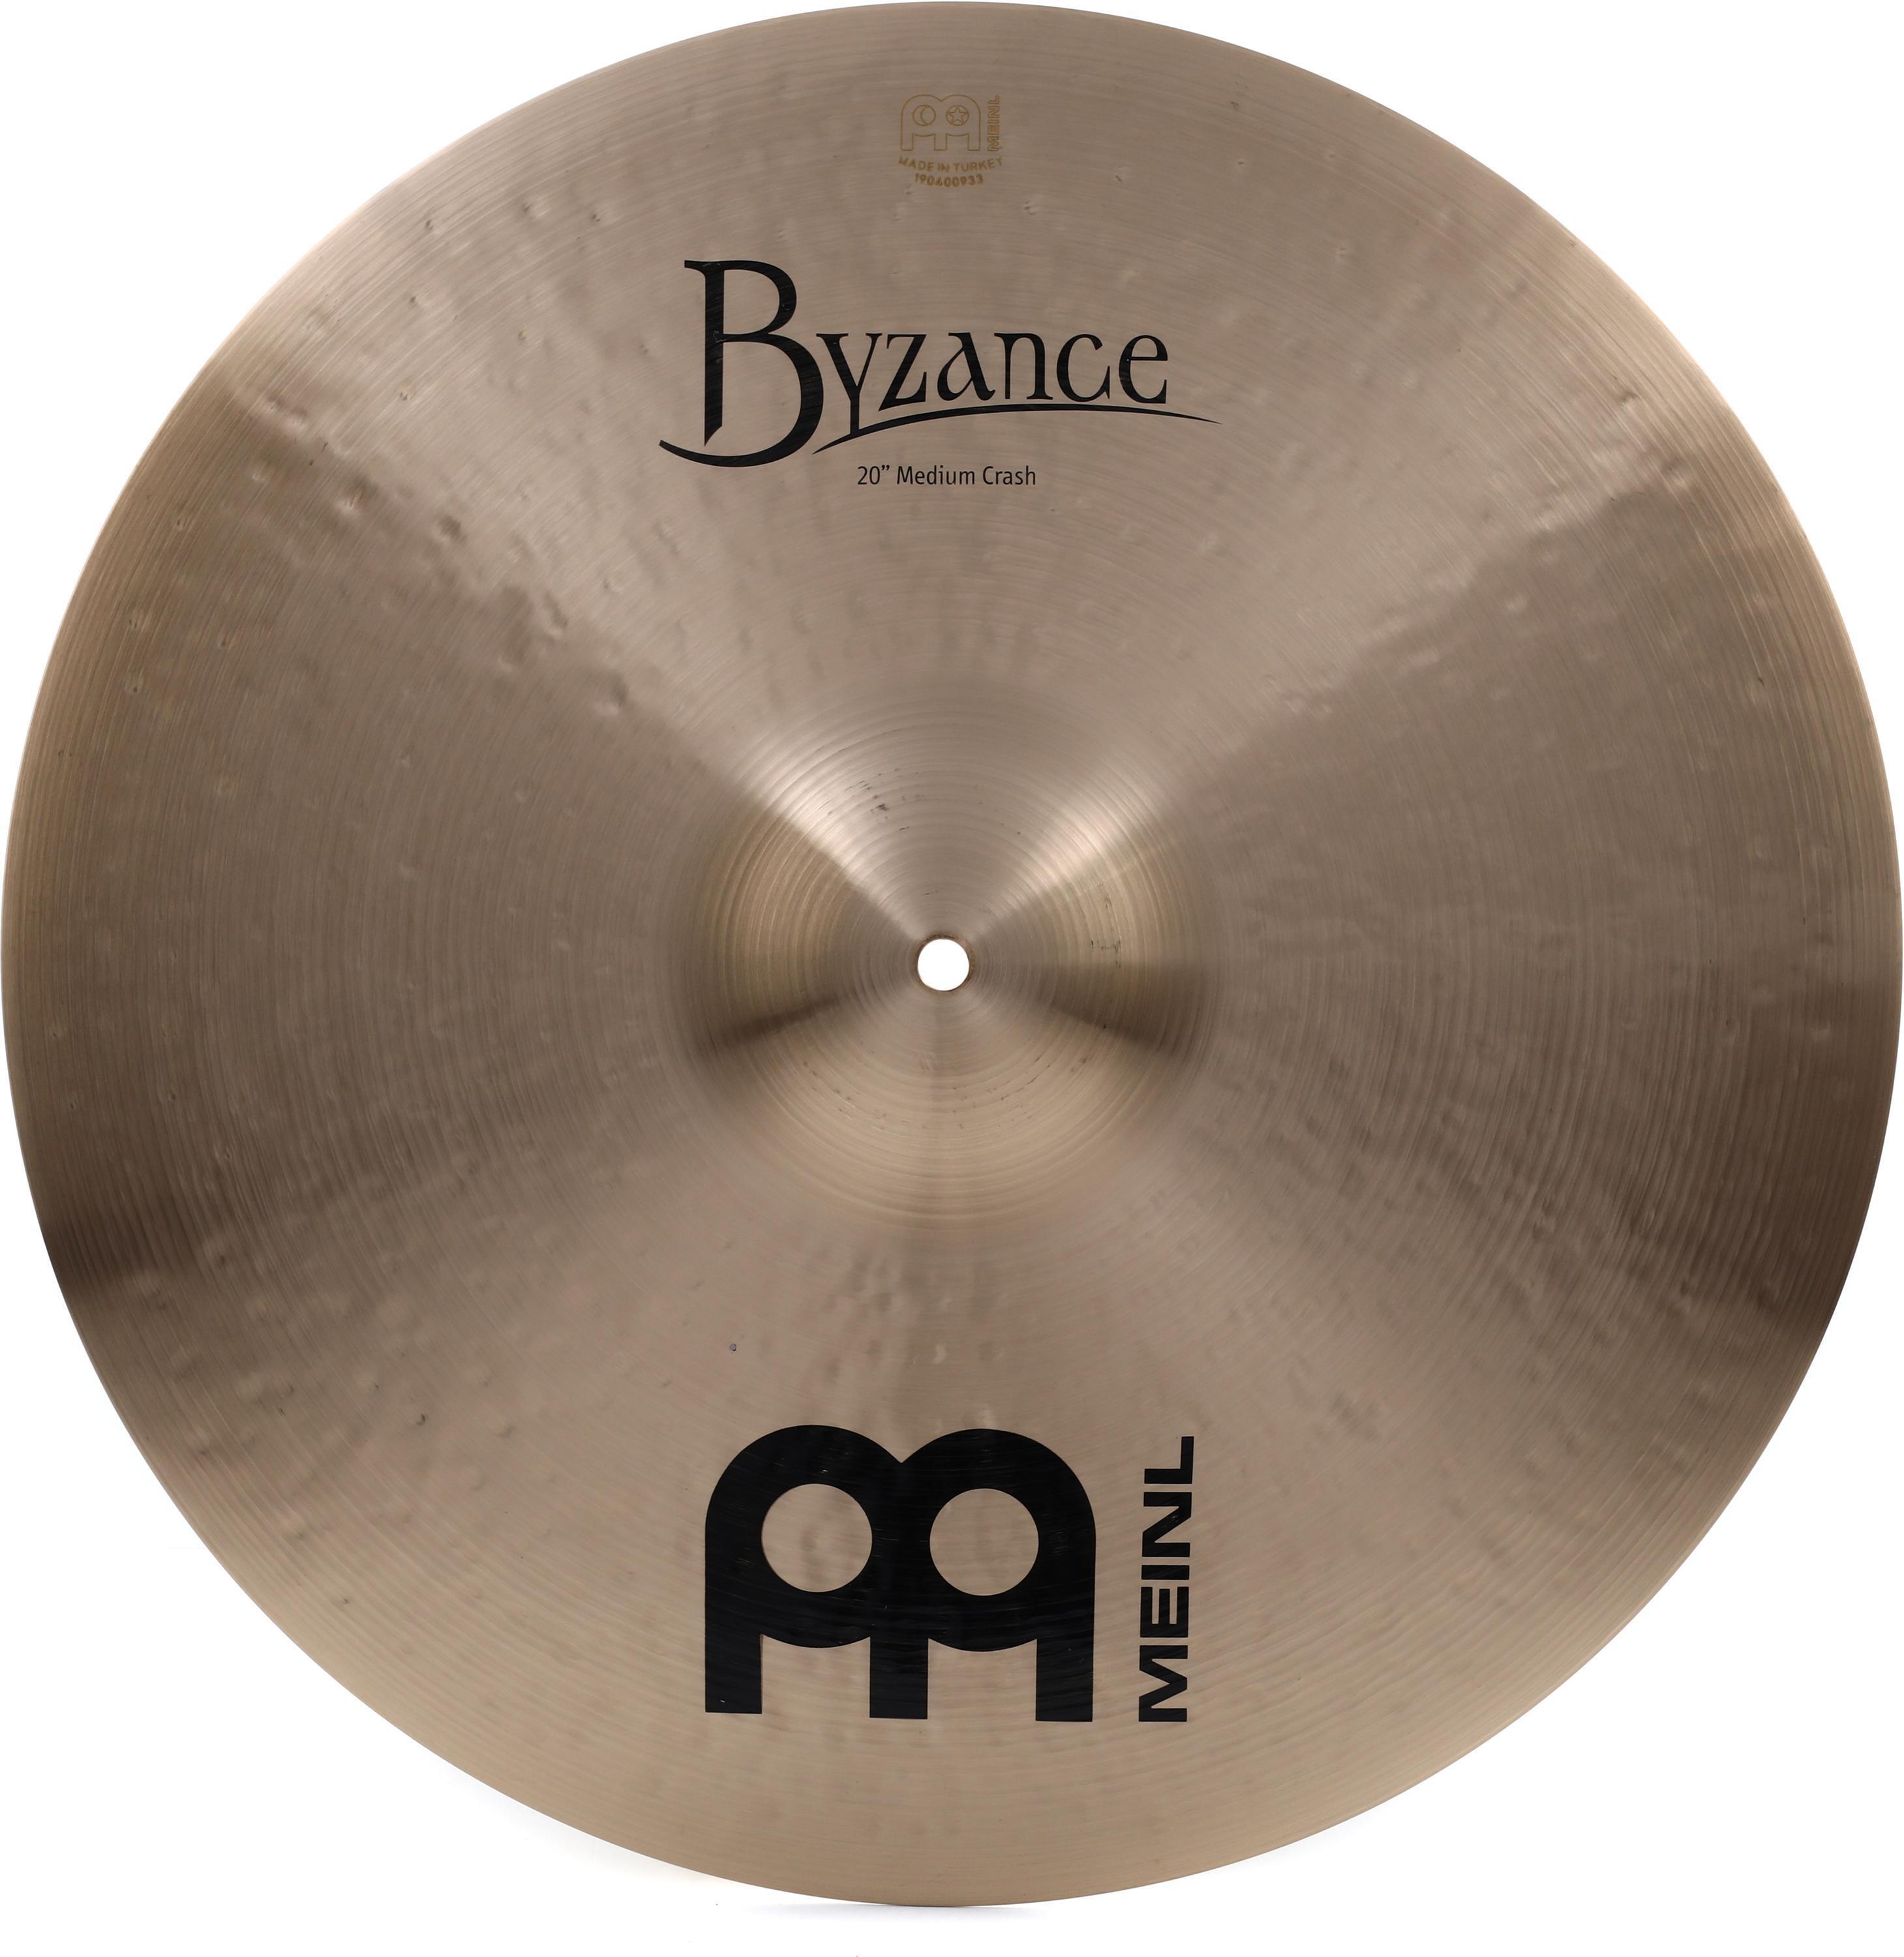 Bundled Item: Meinl Cymbals Byzance Traditional Medium Crash Cymbal - 20-inch